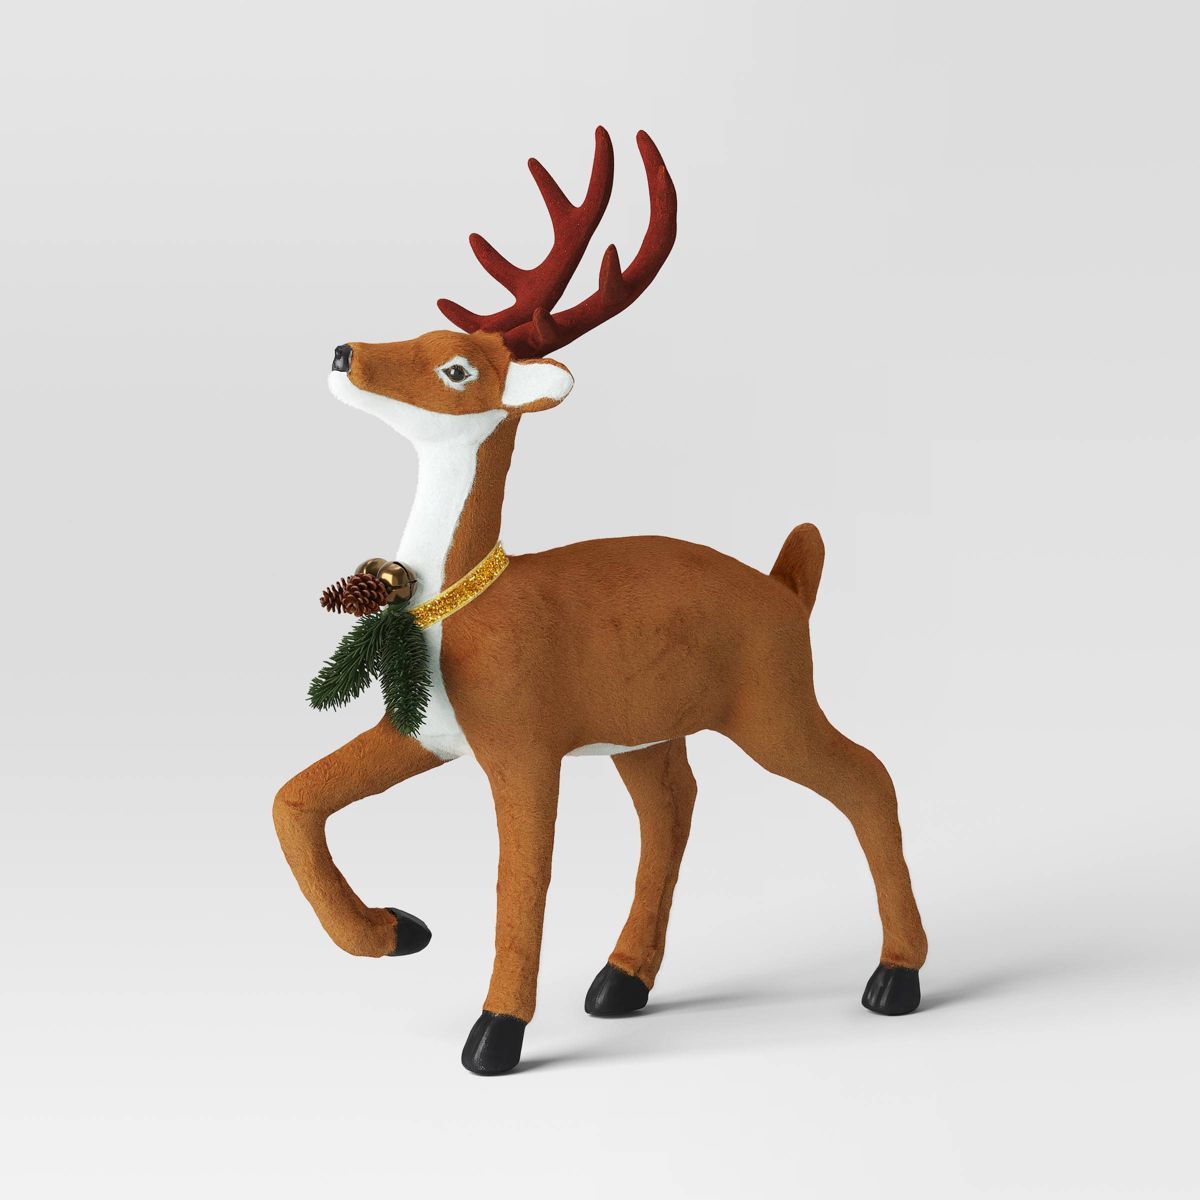 17" Flocked Deer with Greenery Animal Christmas Sculpture - Wondershop™ Brown | Target